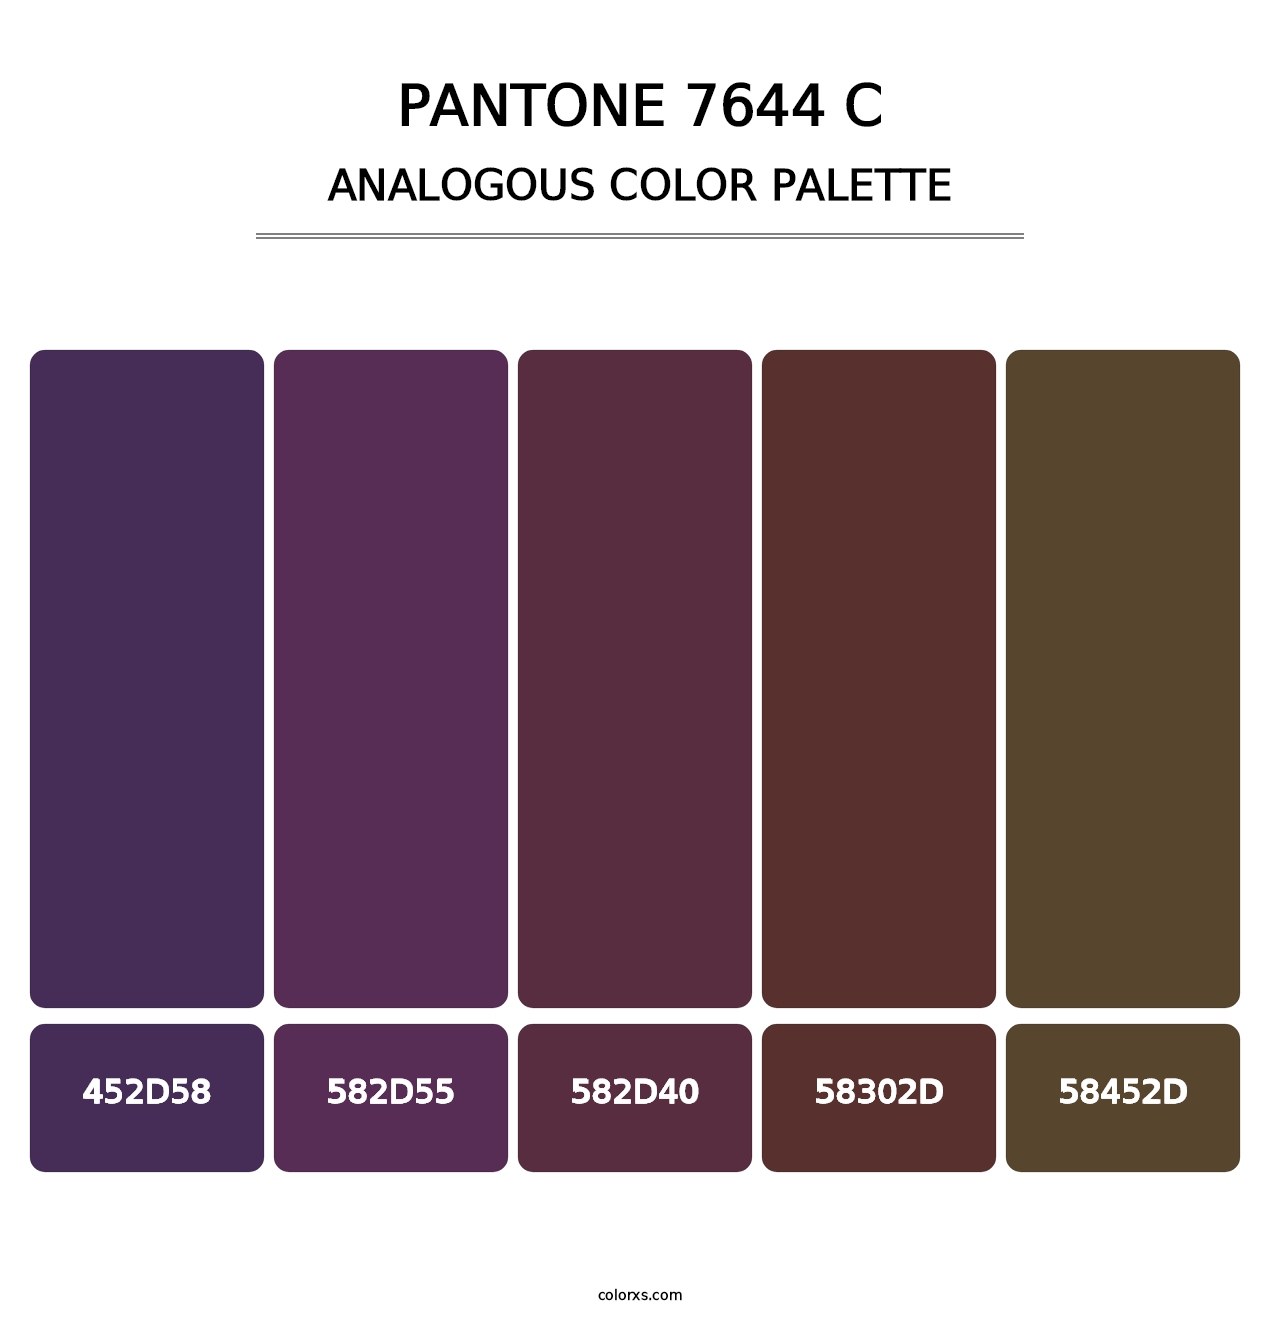 PANTONE 7644 C - Analogous Color Palette